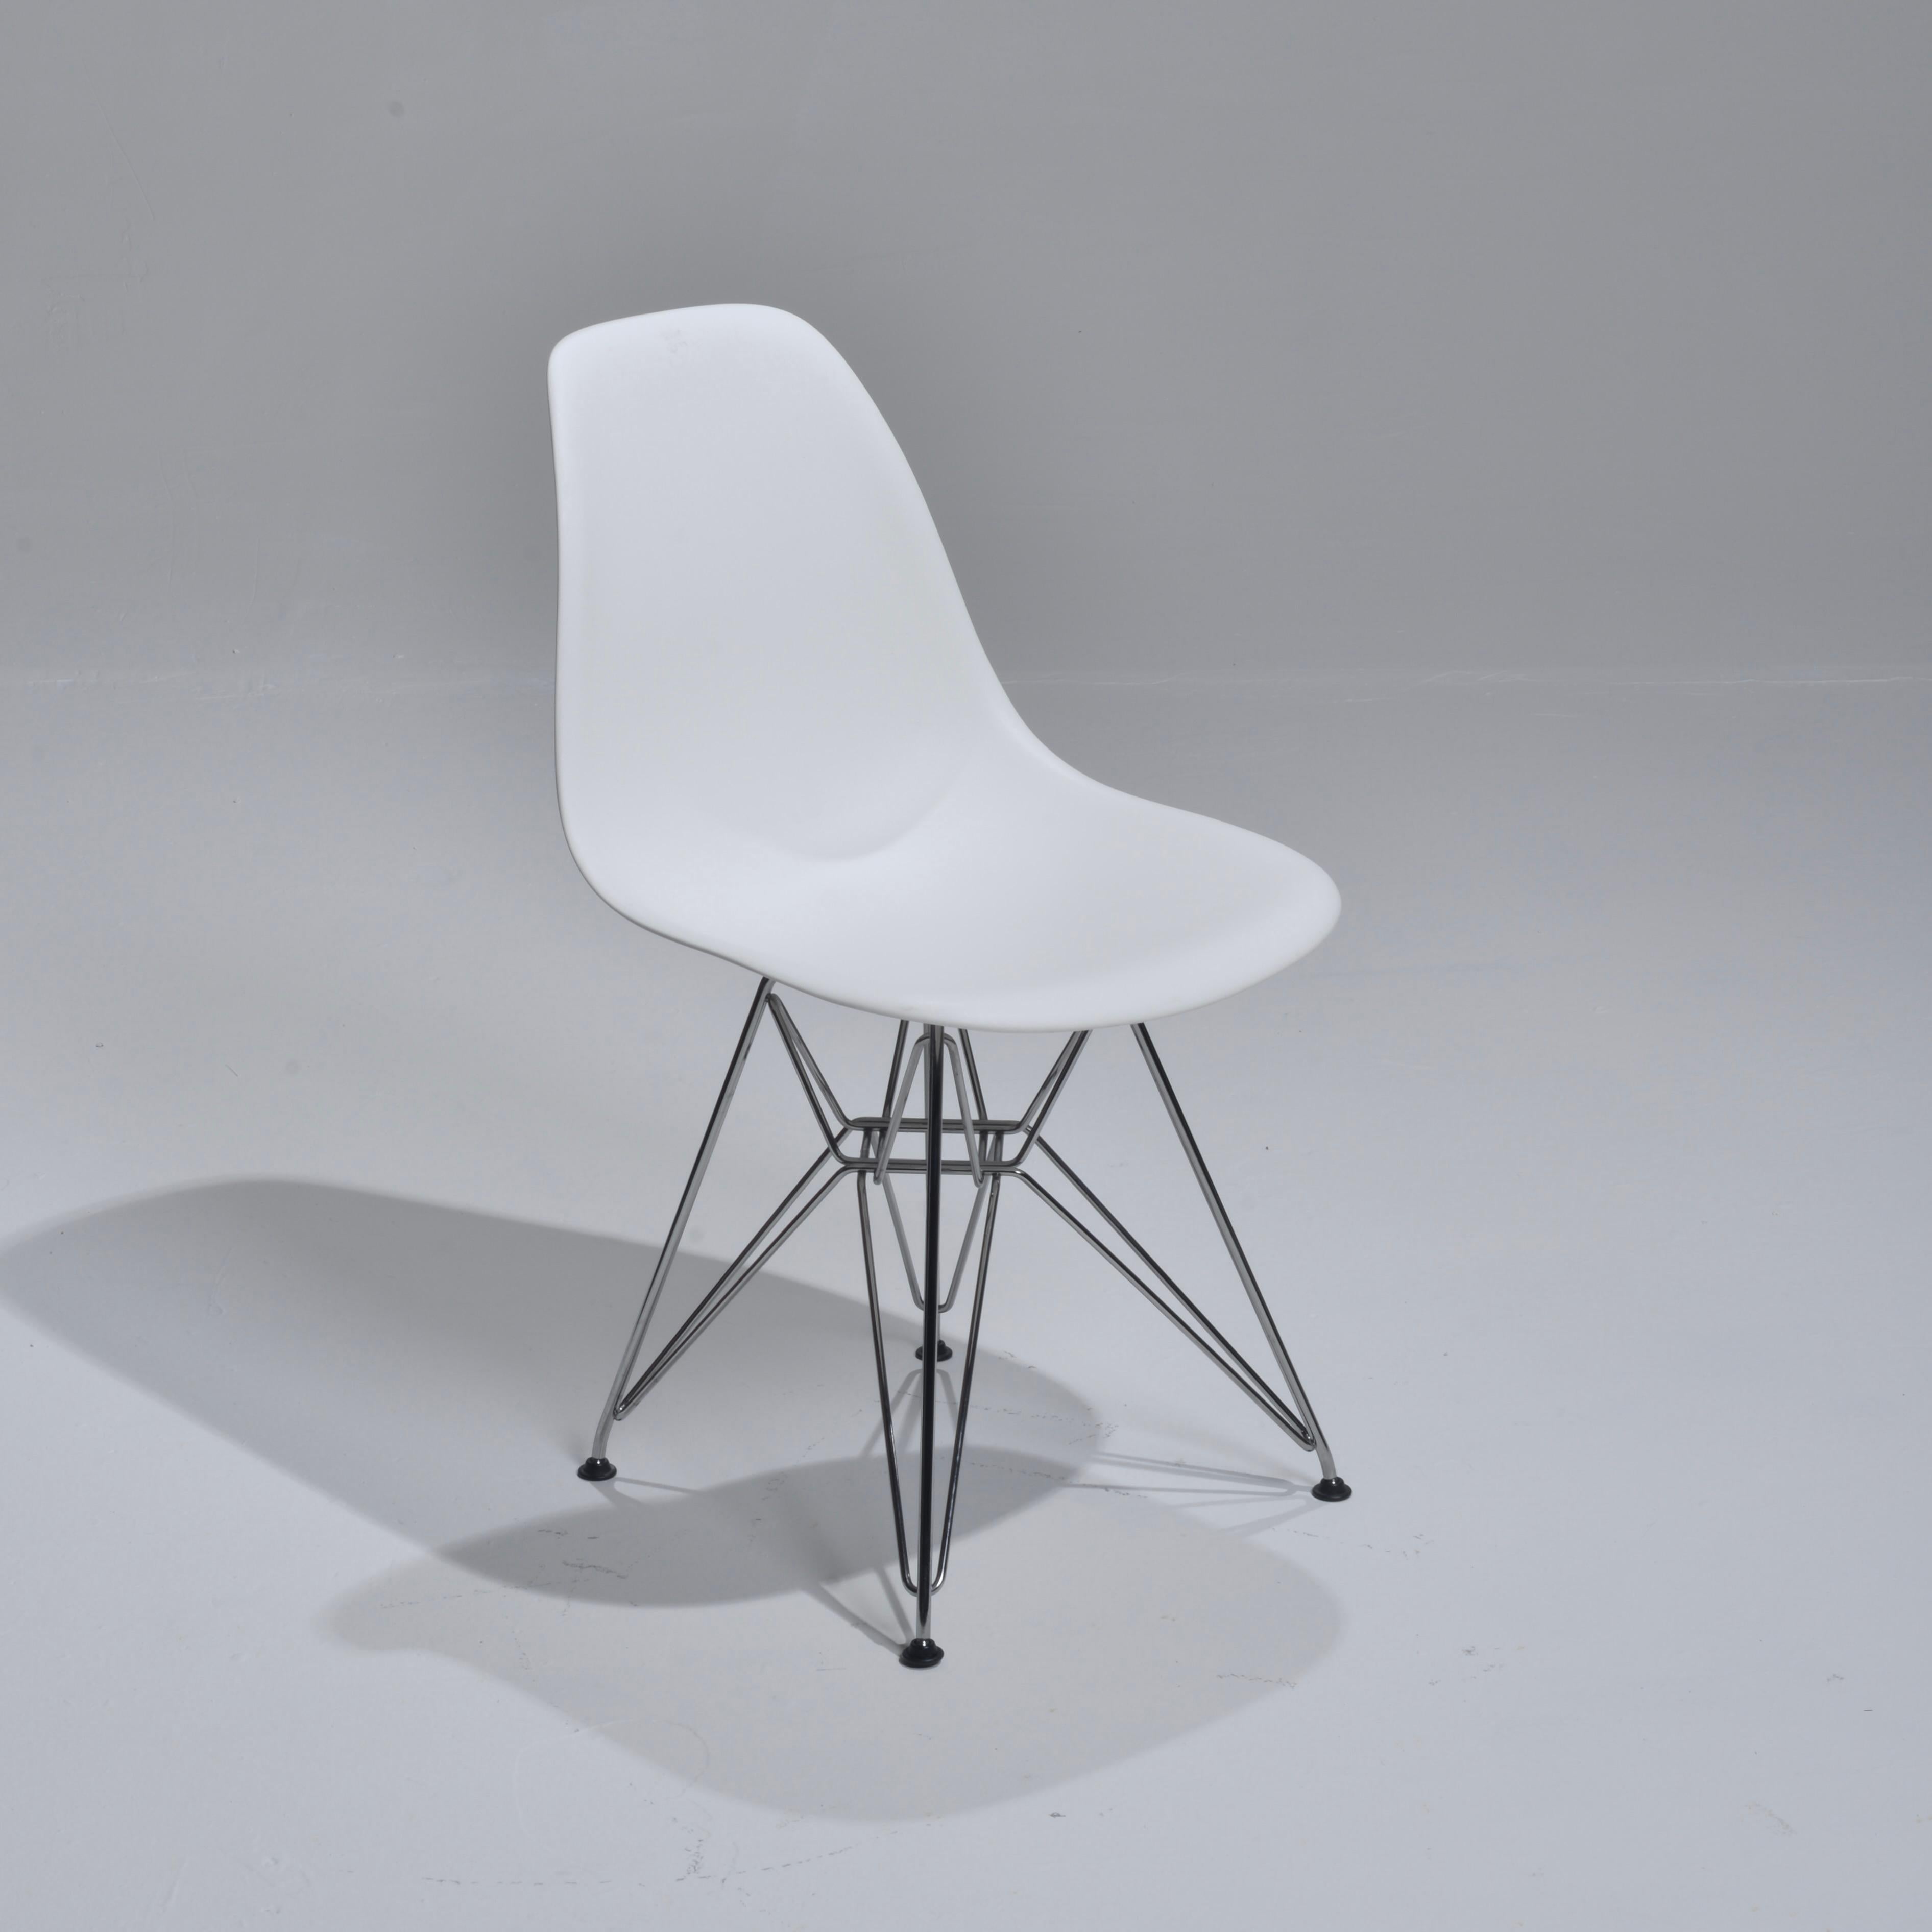 Wir haben 65 dieser originalen Herman Miller Stühle aus Polypropylen, die von Ray und Charle Eames entworfen wurden. Wir haben 65 weiße Stühle.
 